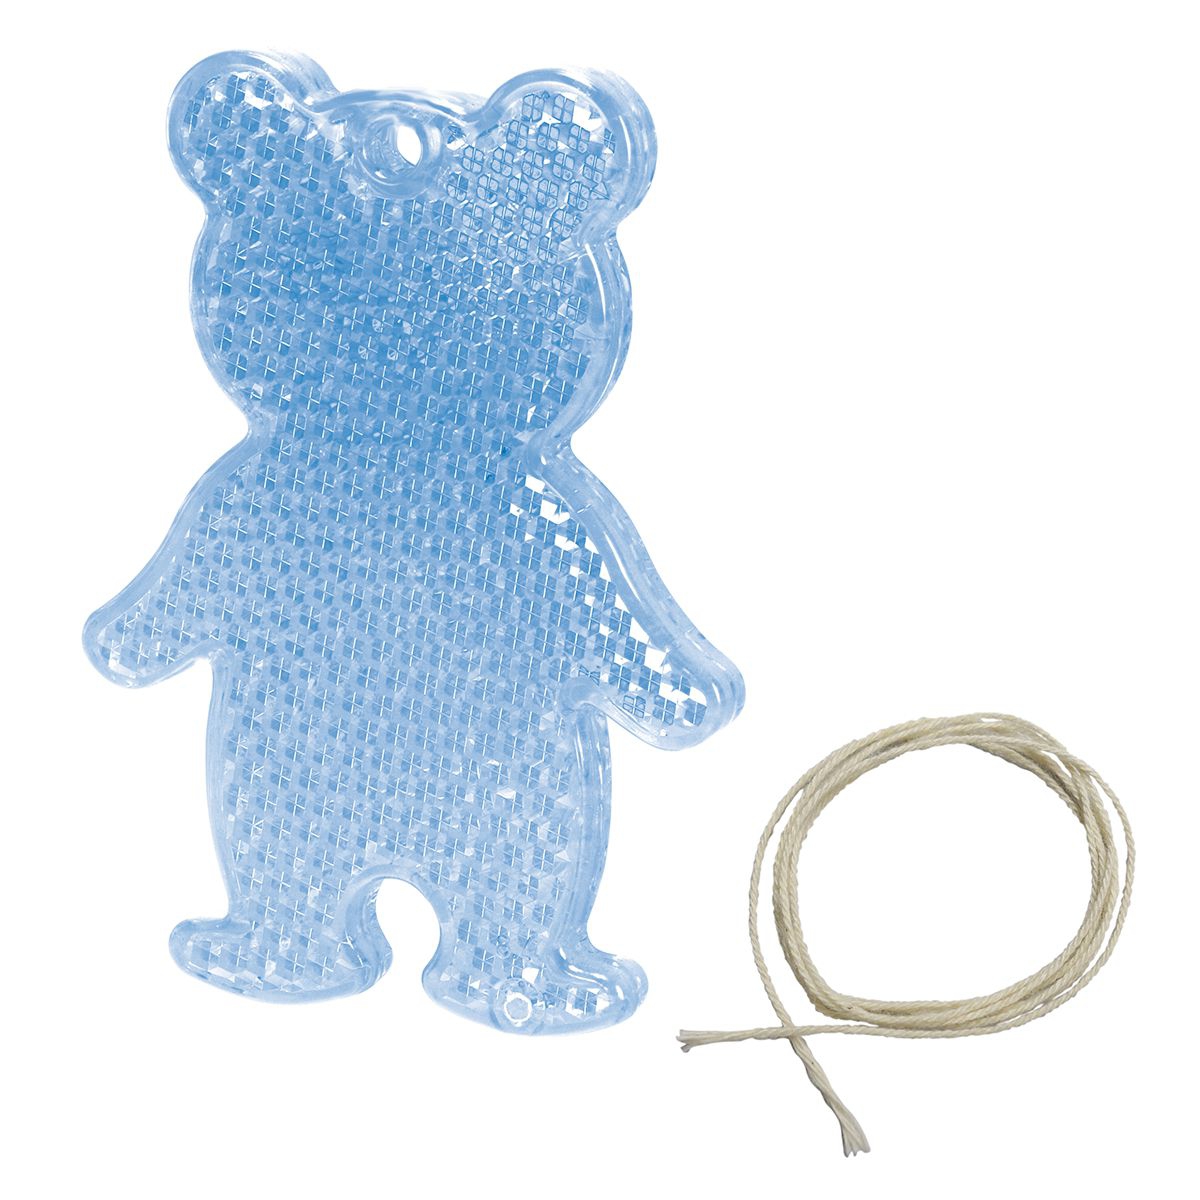 Sicherheitsreflektor "Bär", blau-transparent